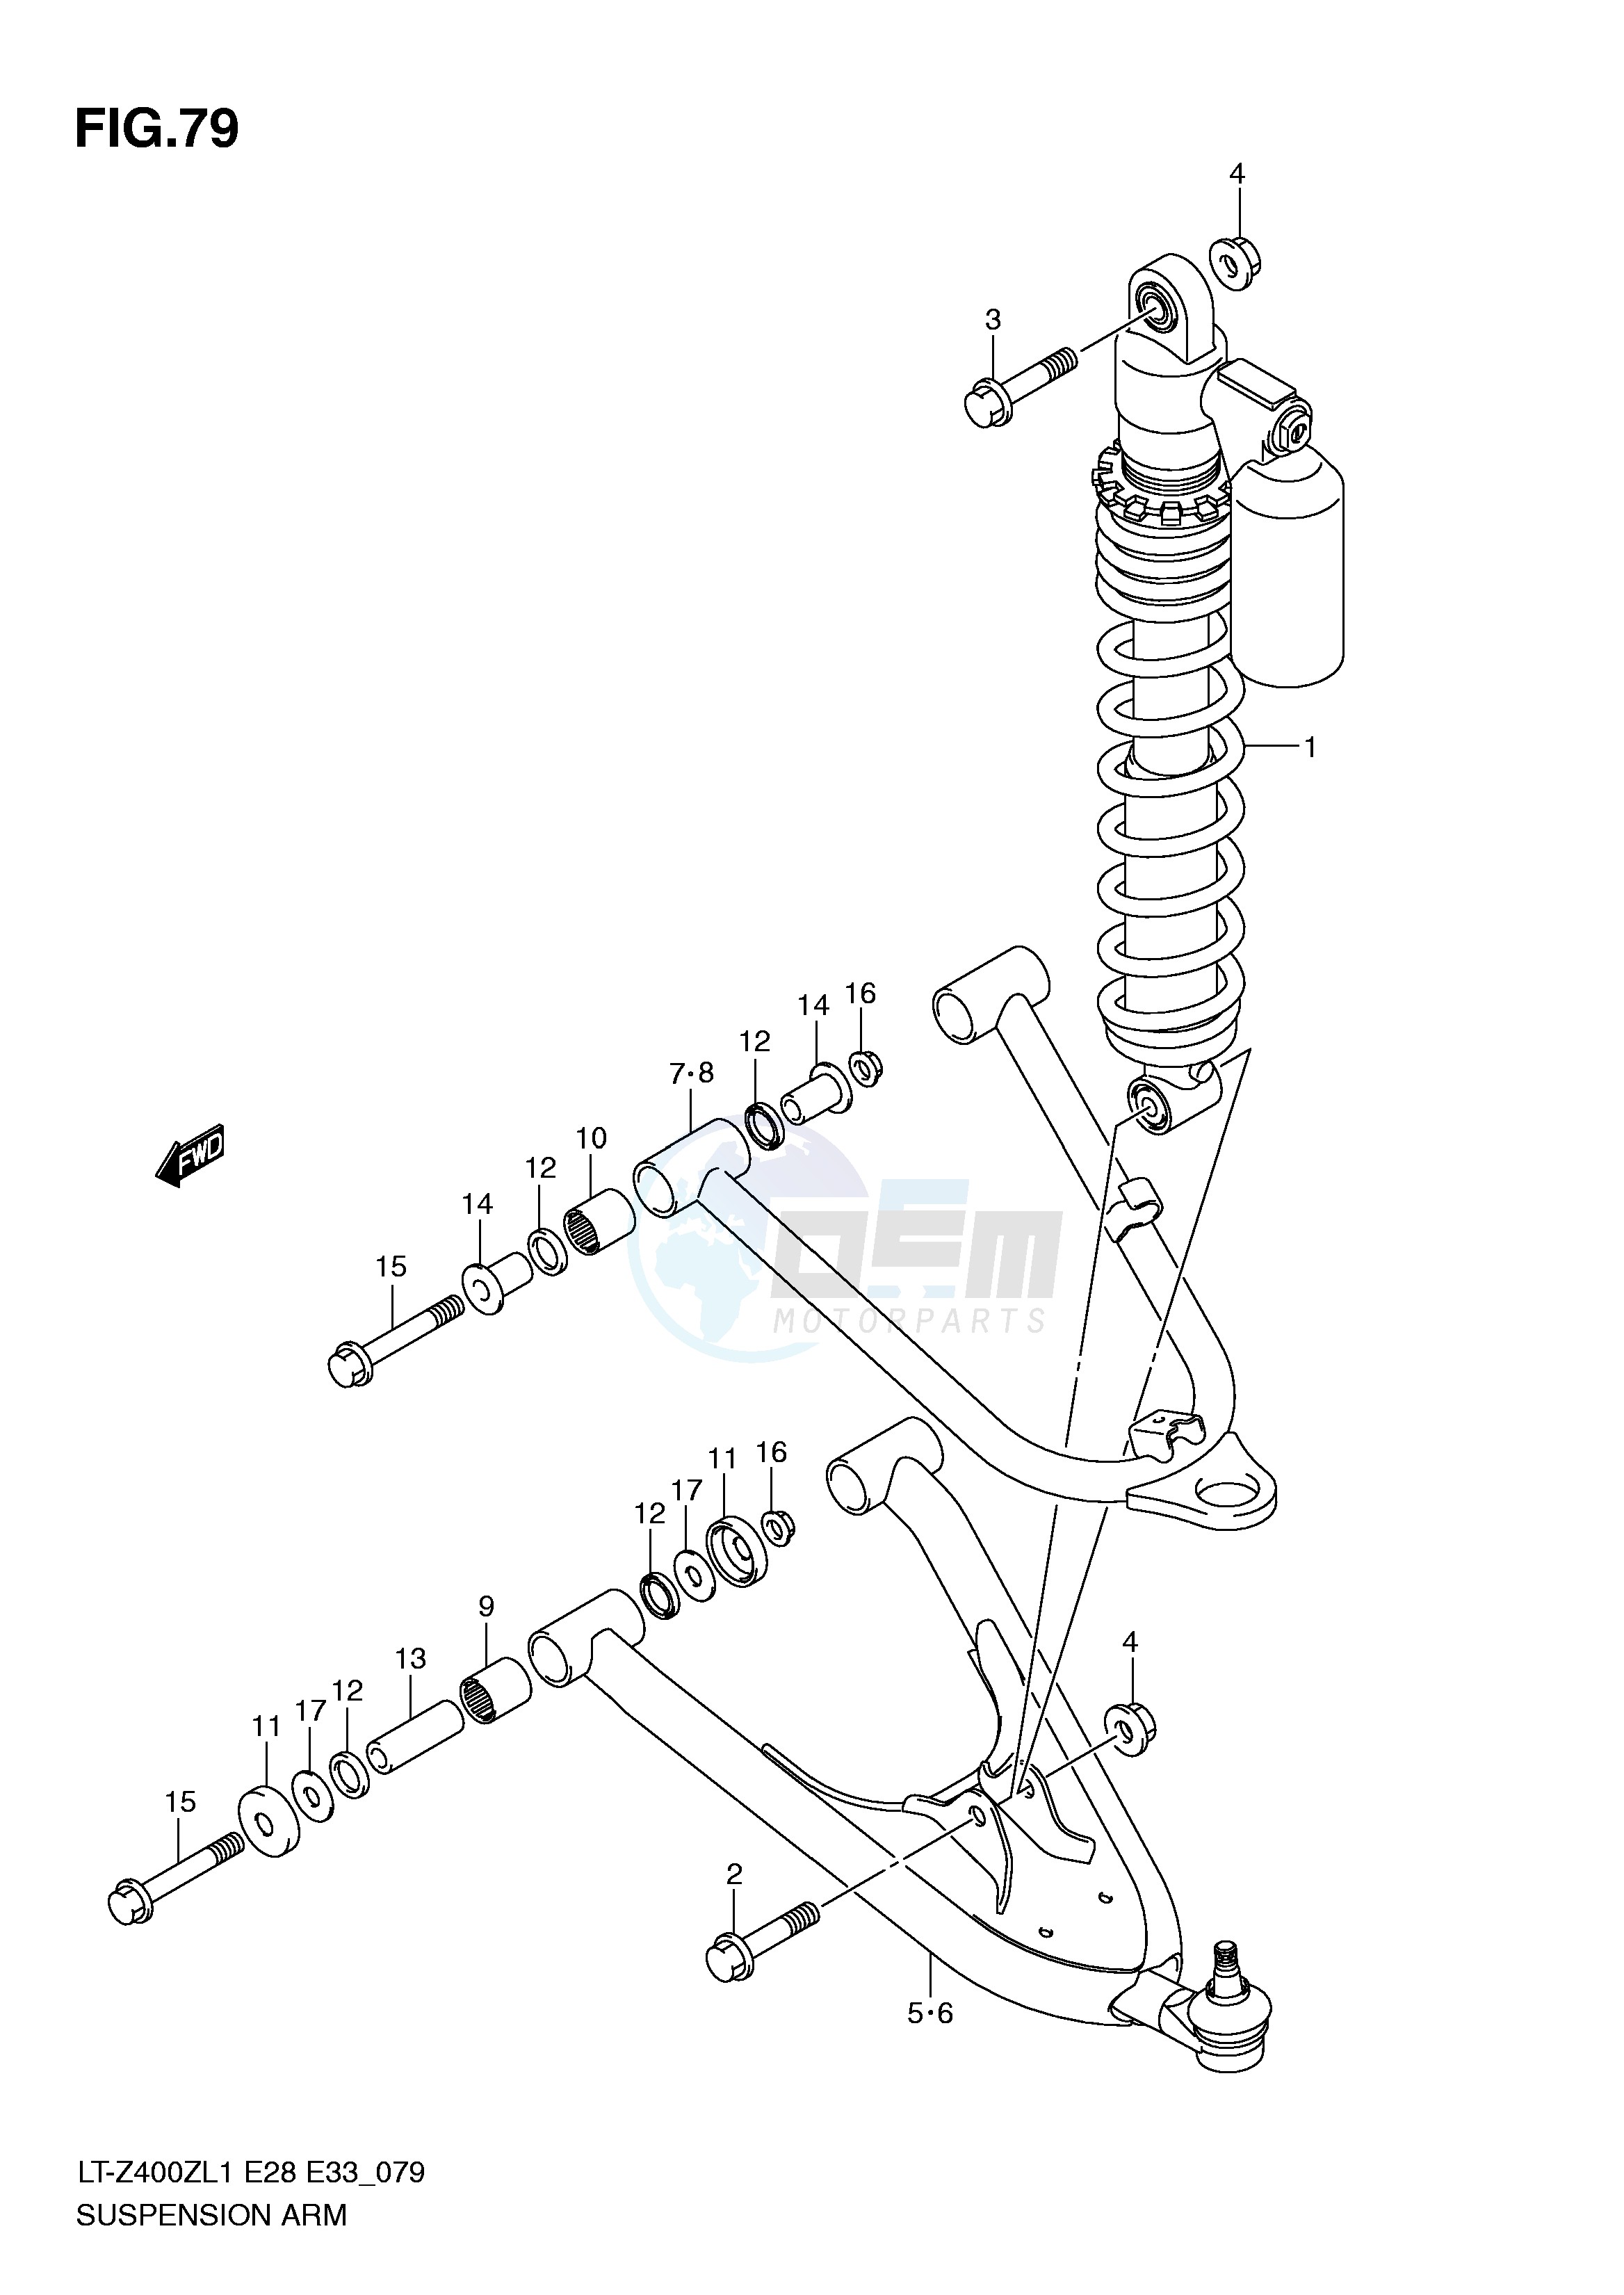 SUSPENSION ARM (LT-Z400ZL1 E28) blueprint